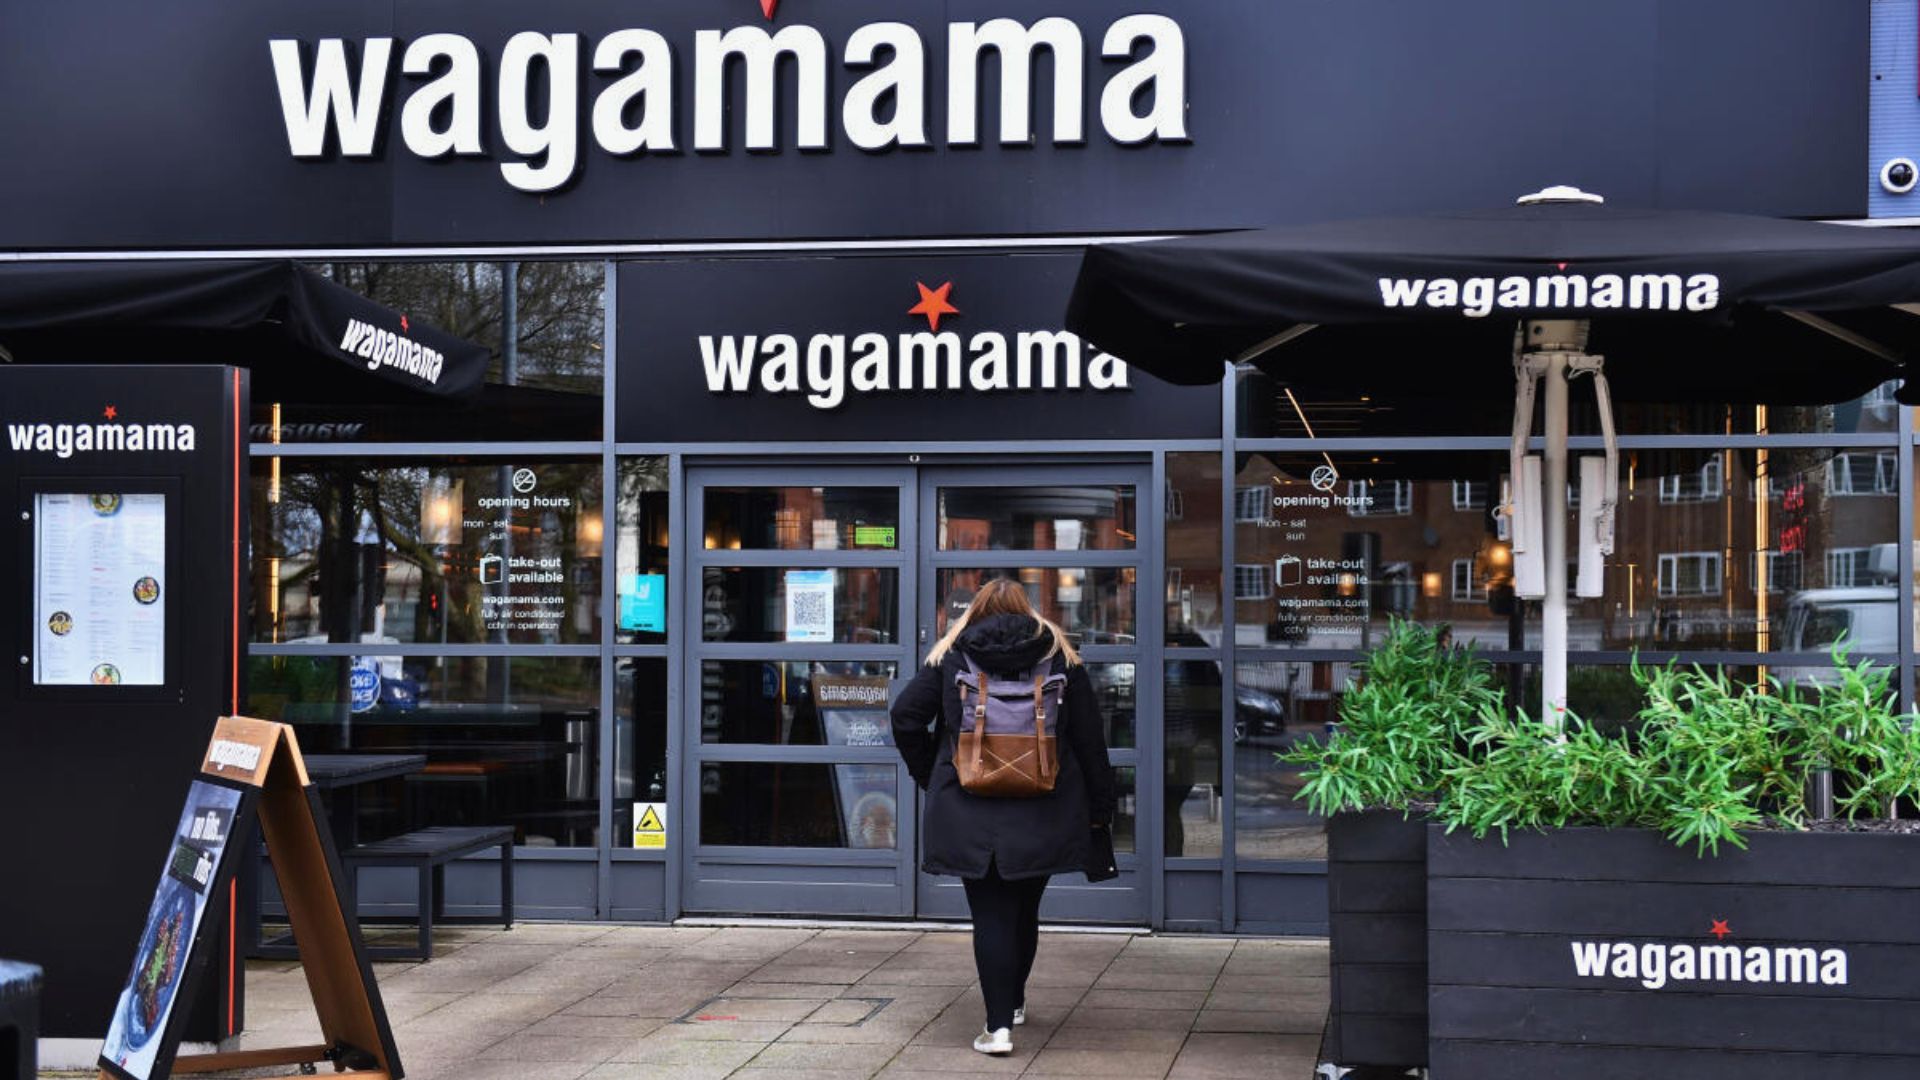 Wagamama Cambridge Outlets UK